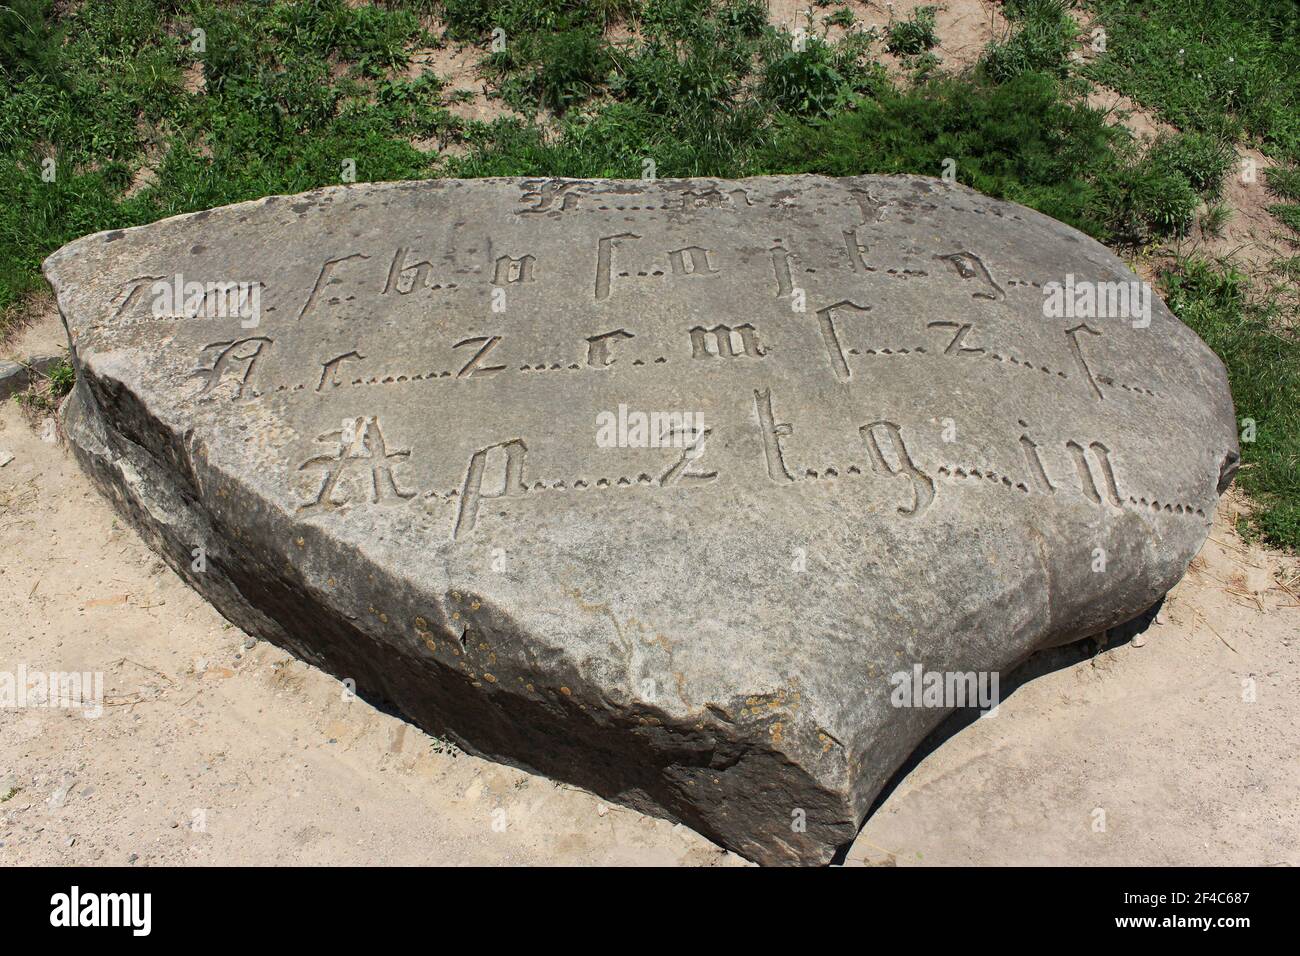 Ancienne inscription codée gravée par police gothique avec lettres manquantes sur un gros bloc, cette roche est mieux connue comme la pierre des Templiers selon Banque D'Images